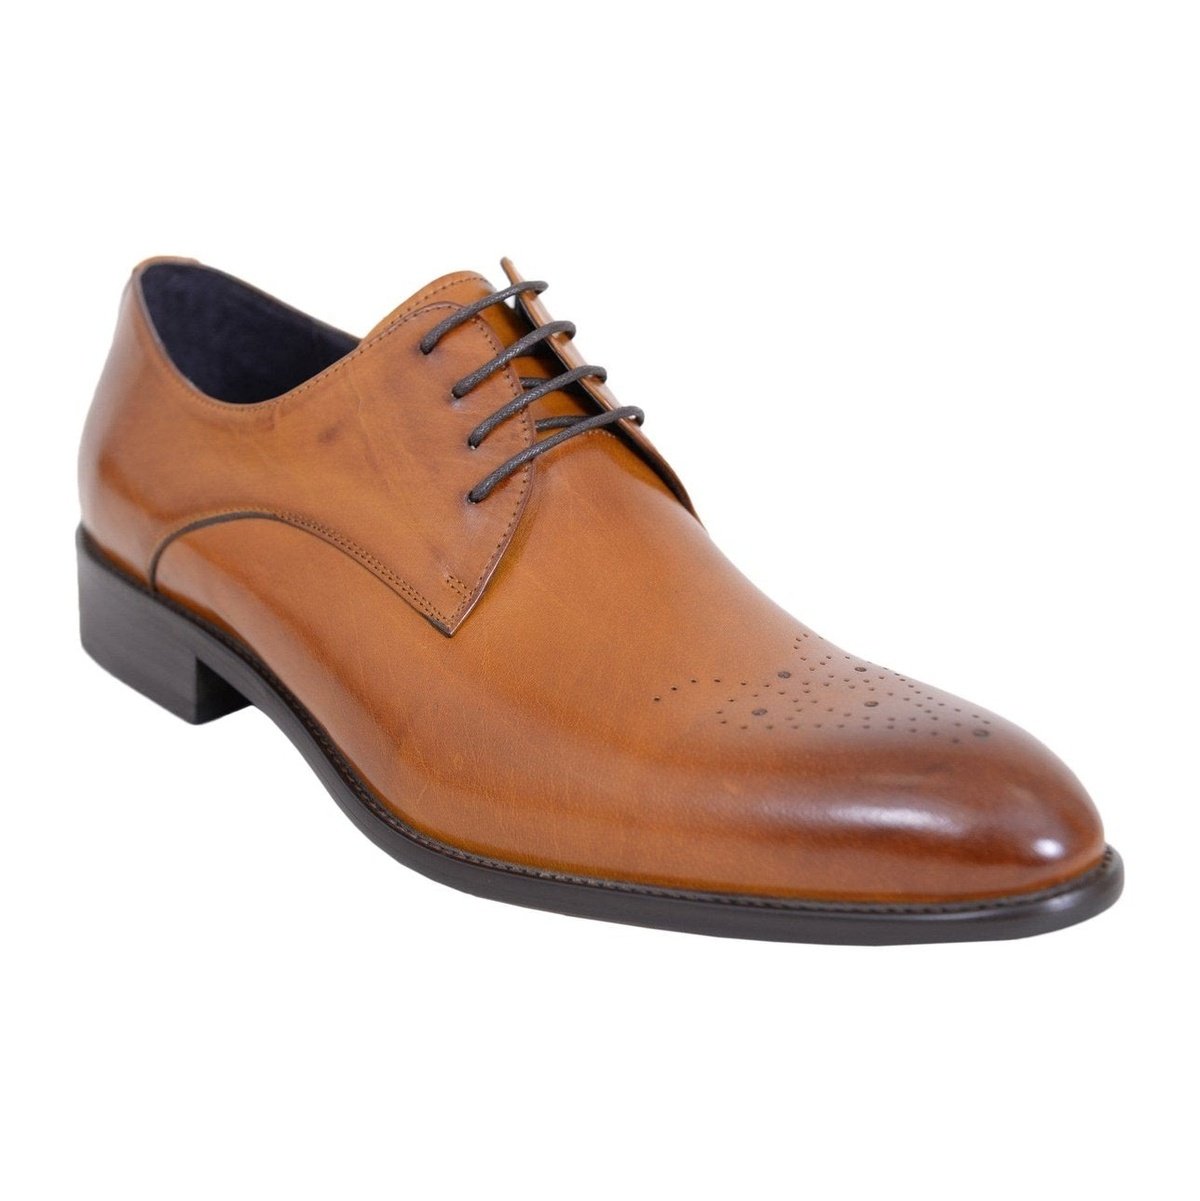 Carrucci Shoes For Amazon 10.5 D-M Carrucci Men&#39;s Genuine Leather Cognac Brown Lace Up Oxford Brogues Dress Shoes